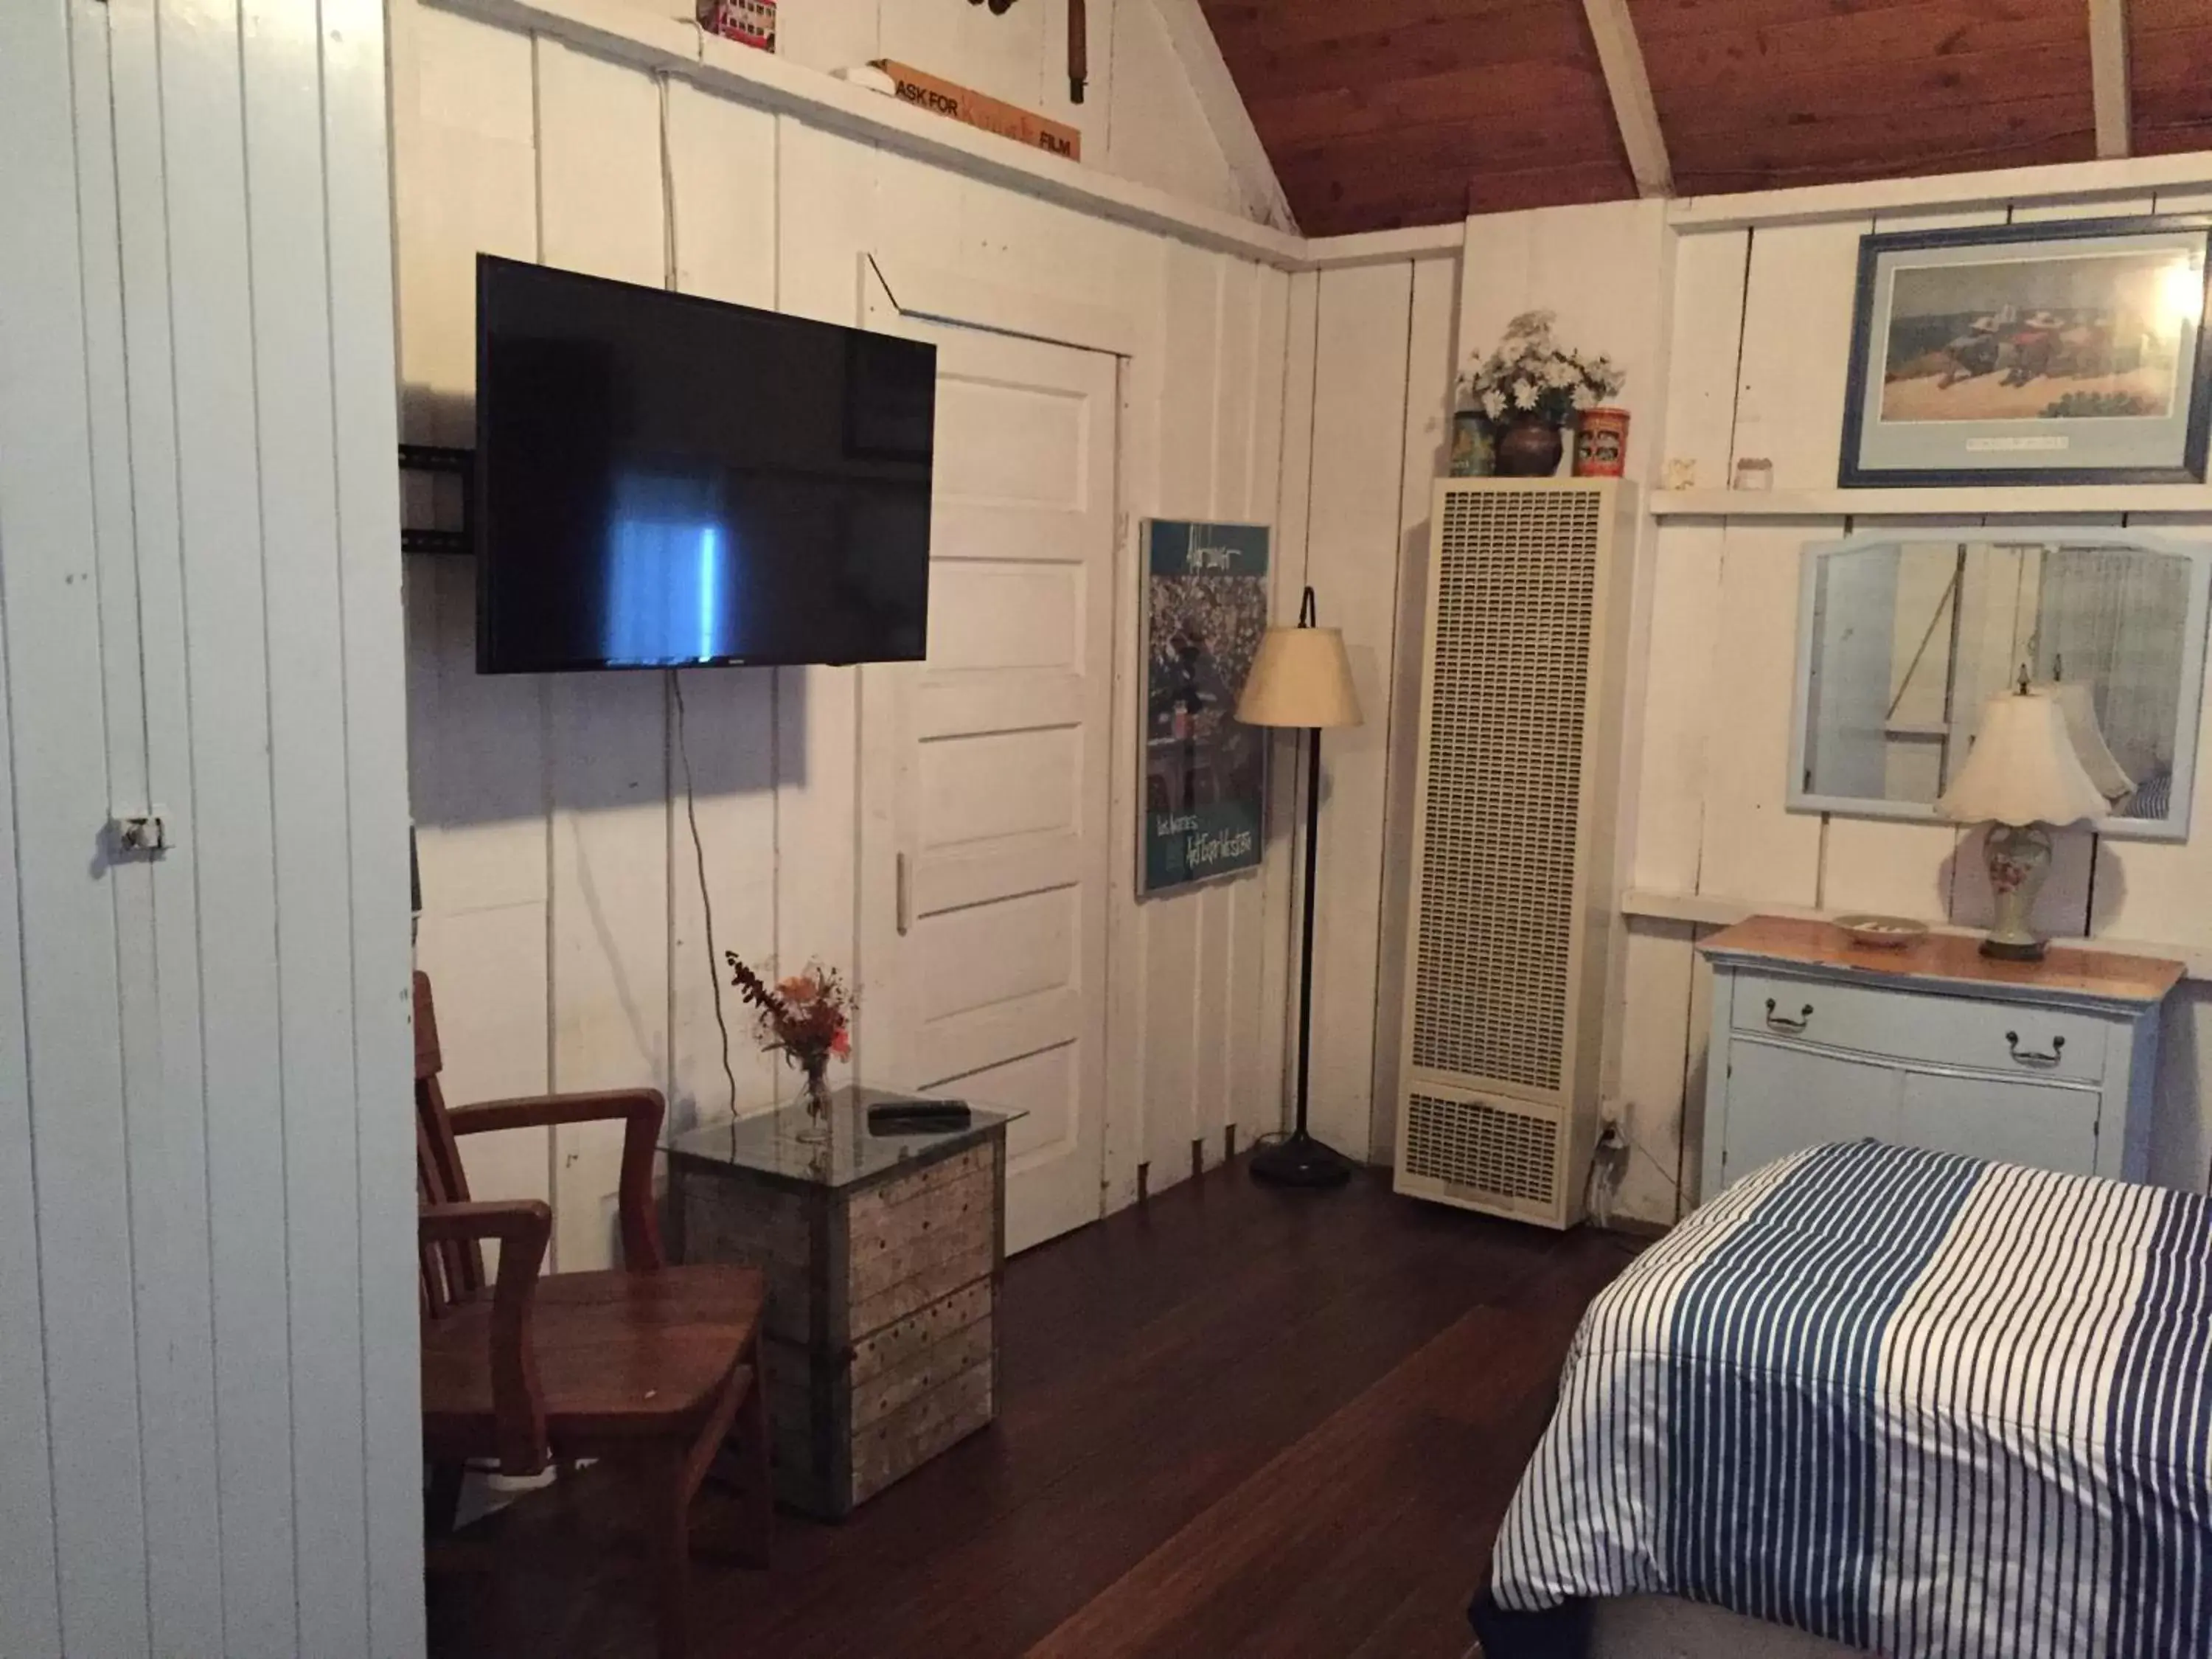 Bedroom, TV/Entertainment Center in Catalina Island Seacrest Inn